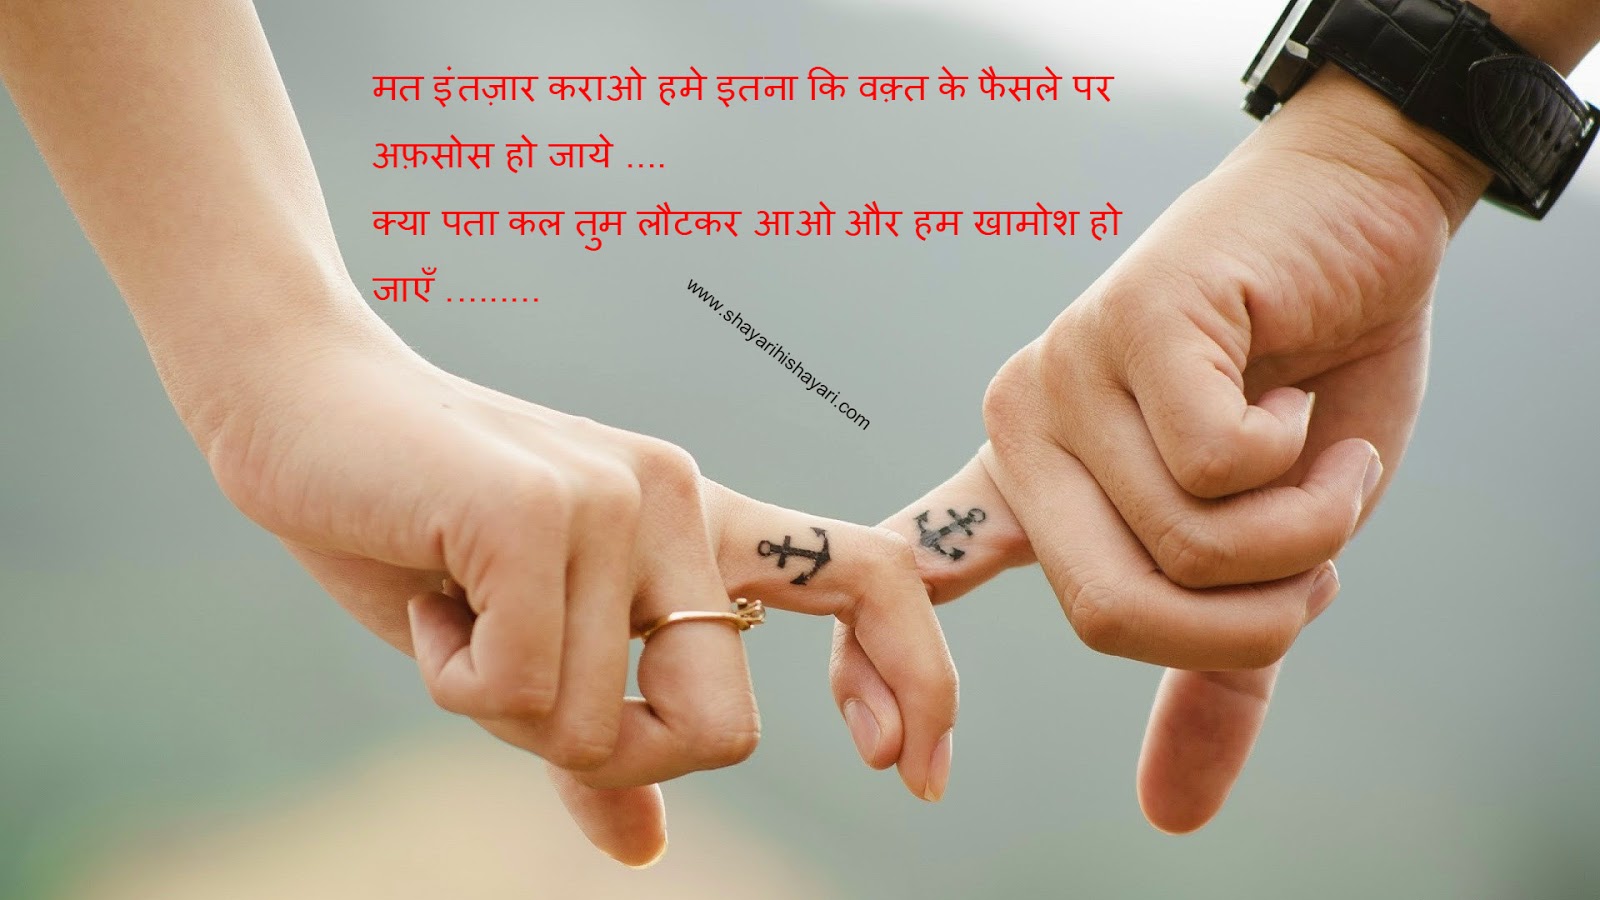 Hindi Shayari Love Heart In Hand Hd Photo Hd Wallpapers - Best Friend Wallpaper Hd , HD Wallpaper & Backgrounds